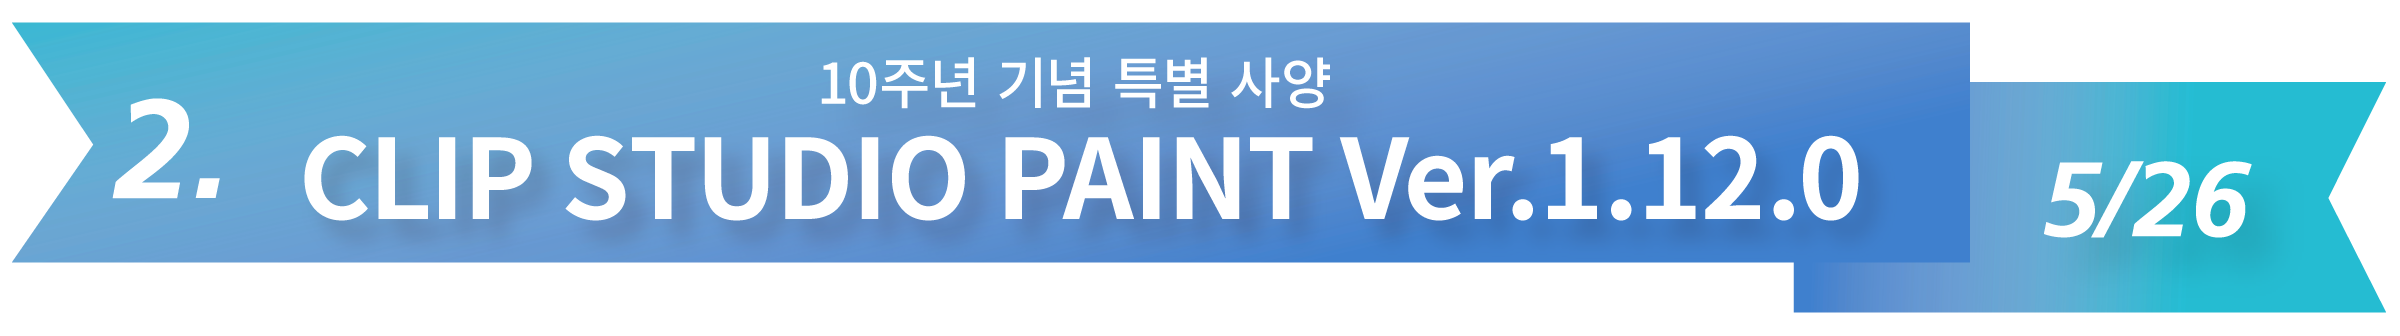 2. 10주년 기념 특별 사양 CLIP STUDIO PAINT Ver.1.12.0  5/26